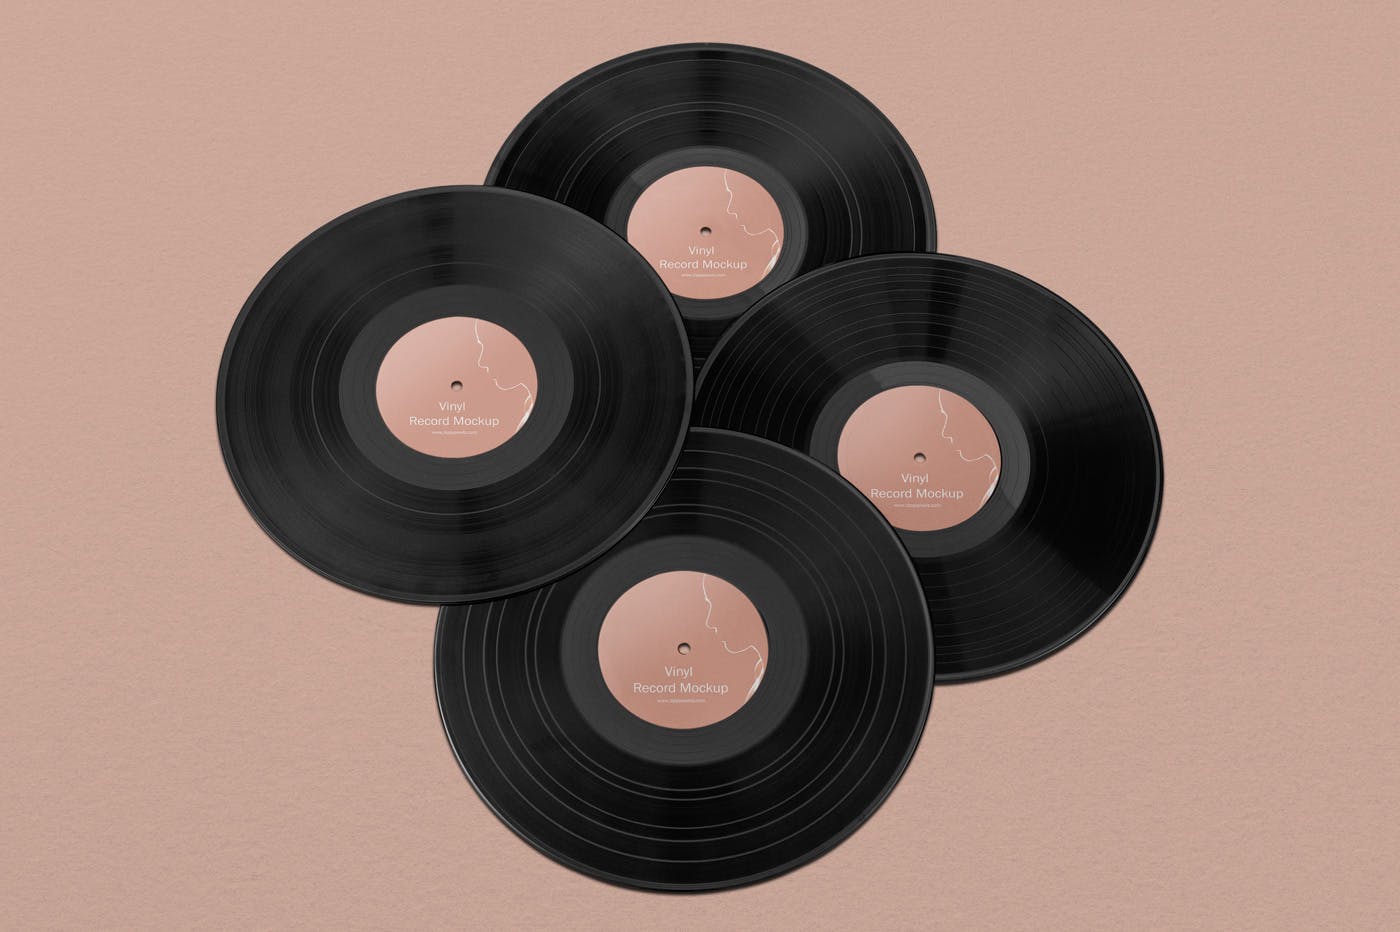 高端的黑胶唱片样机包装设计套装下载record album